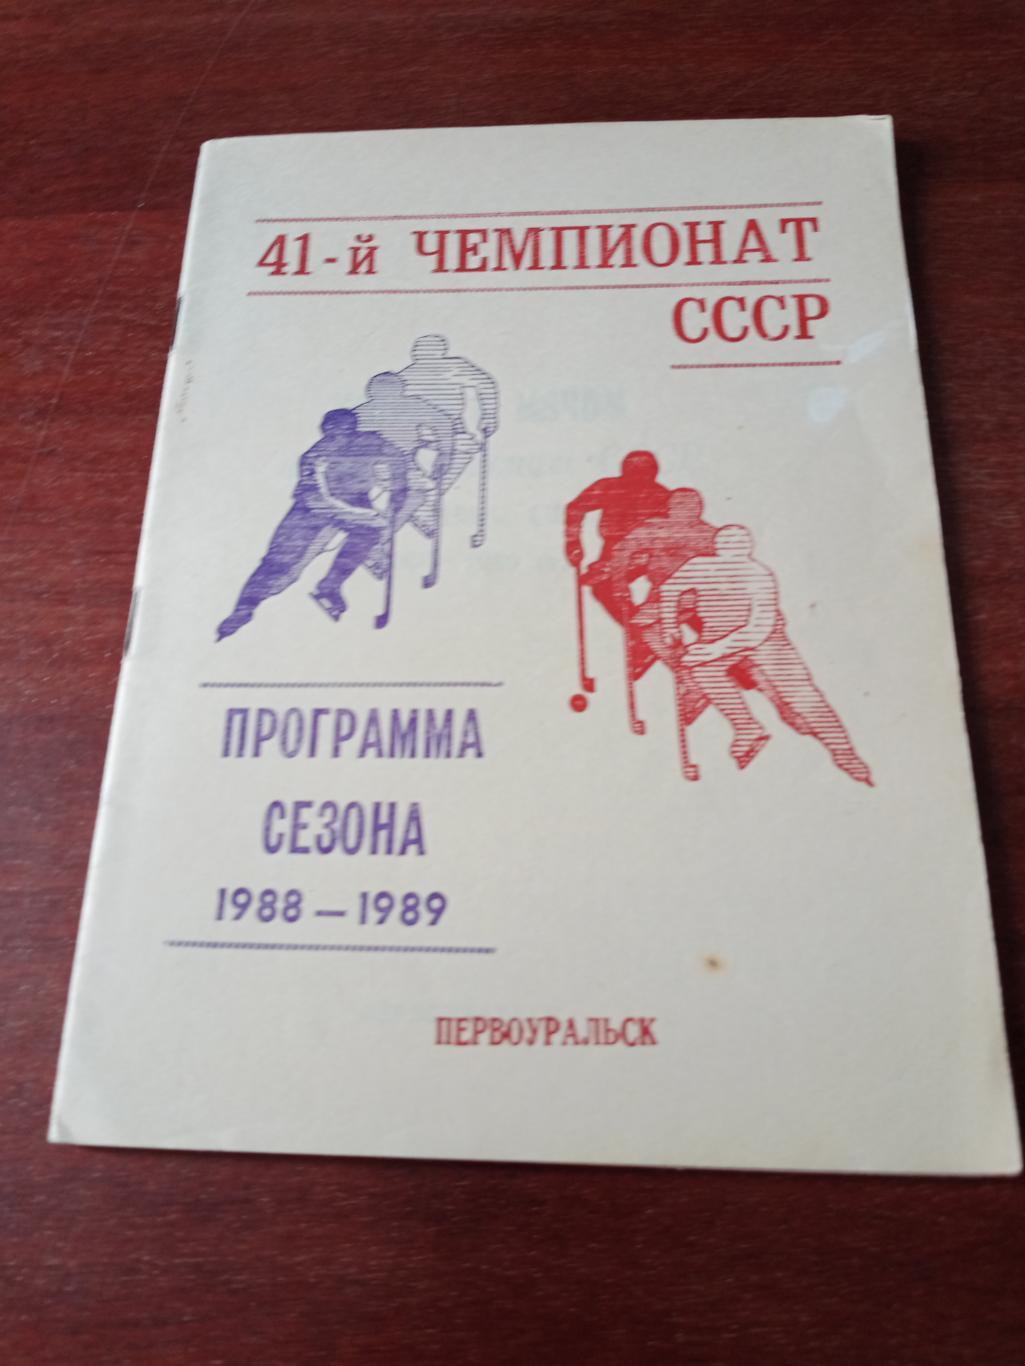 Хоккей с мячом. Первоуральск. 1988/1989 гг.